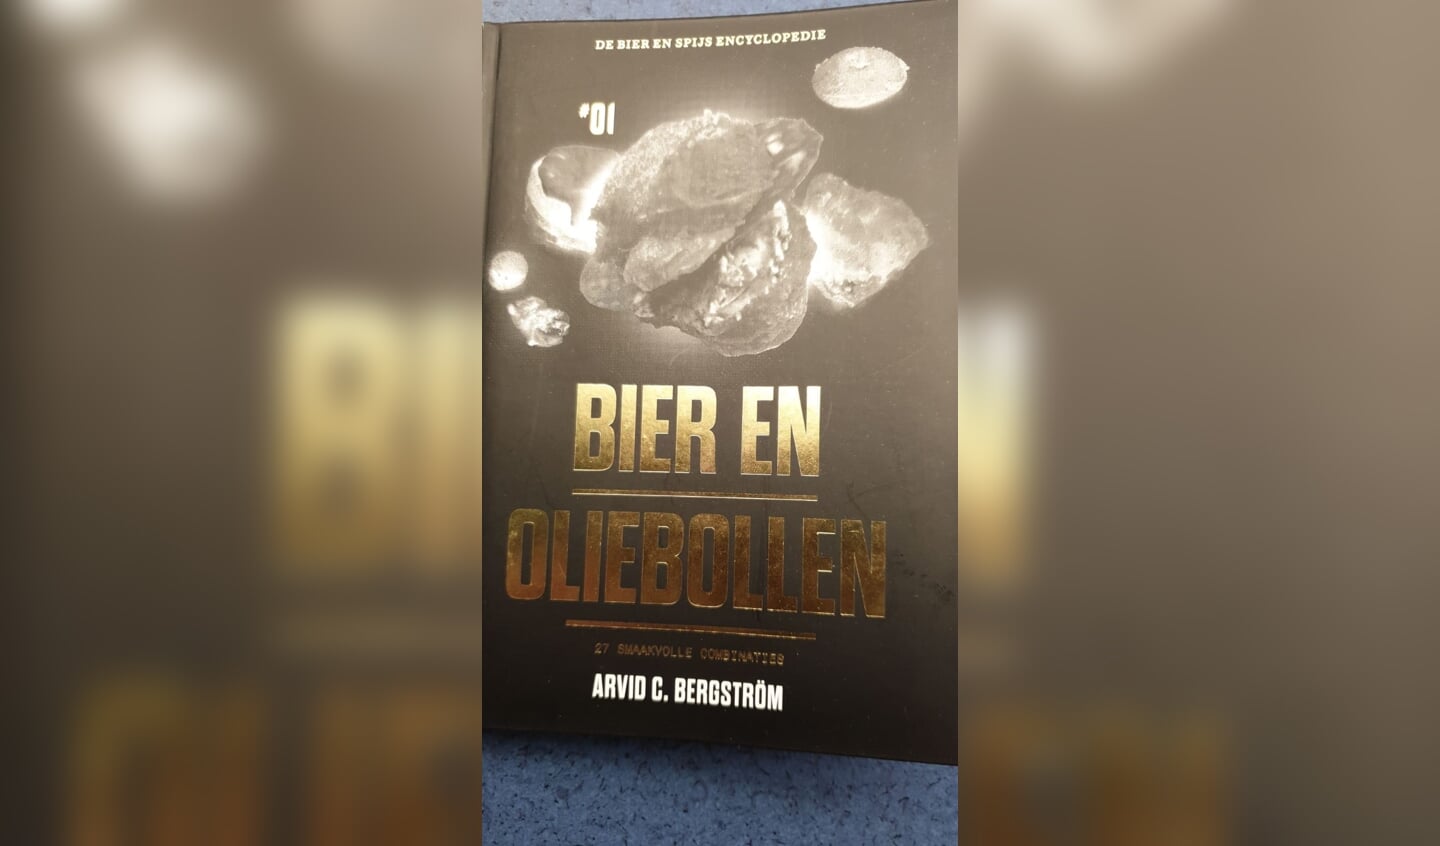 Oliebol aangeboden door winkeliersvereniging. Een gratis oliebol en boekje ter inspiratie ‘ Bier en Oliebollen’.